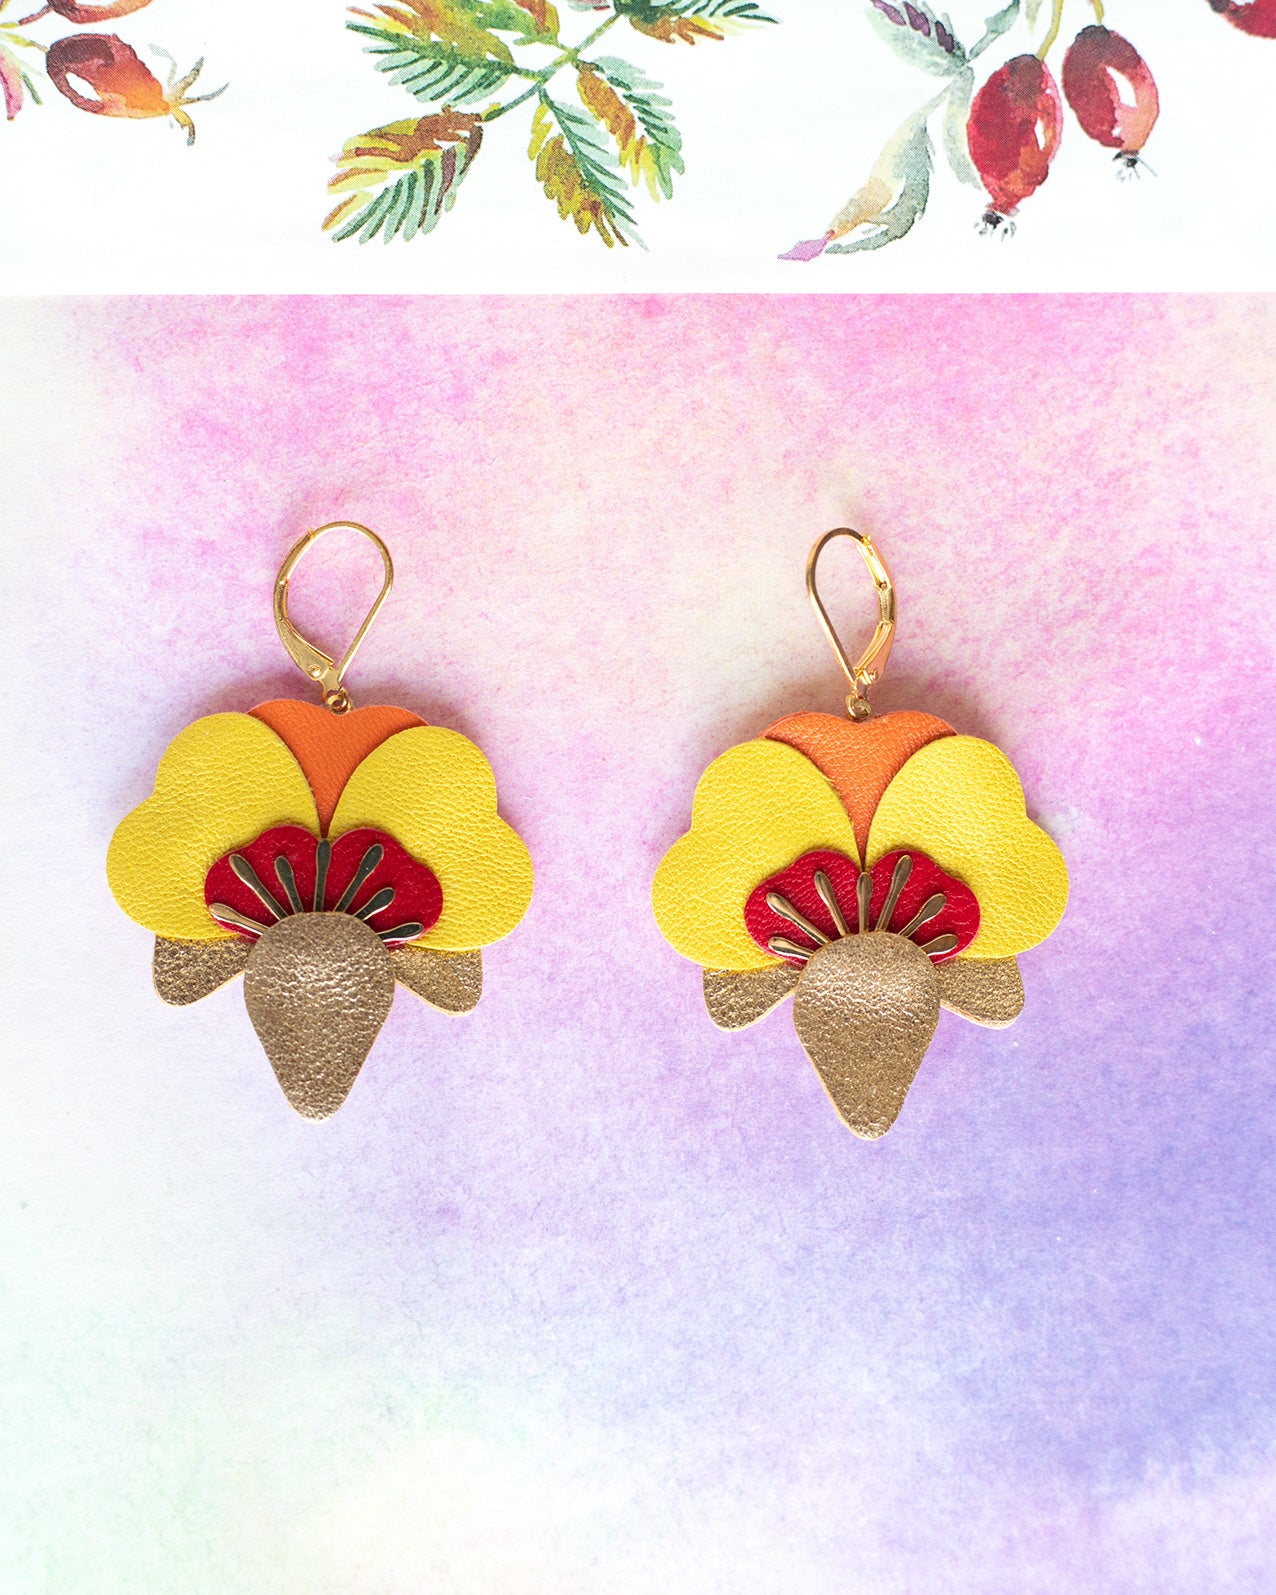 Boucles d’oreilles Orchidées - doré, rouge, jaune, orange